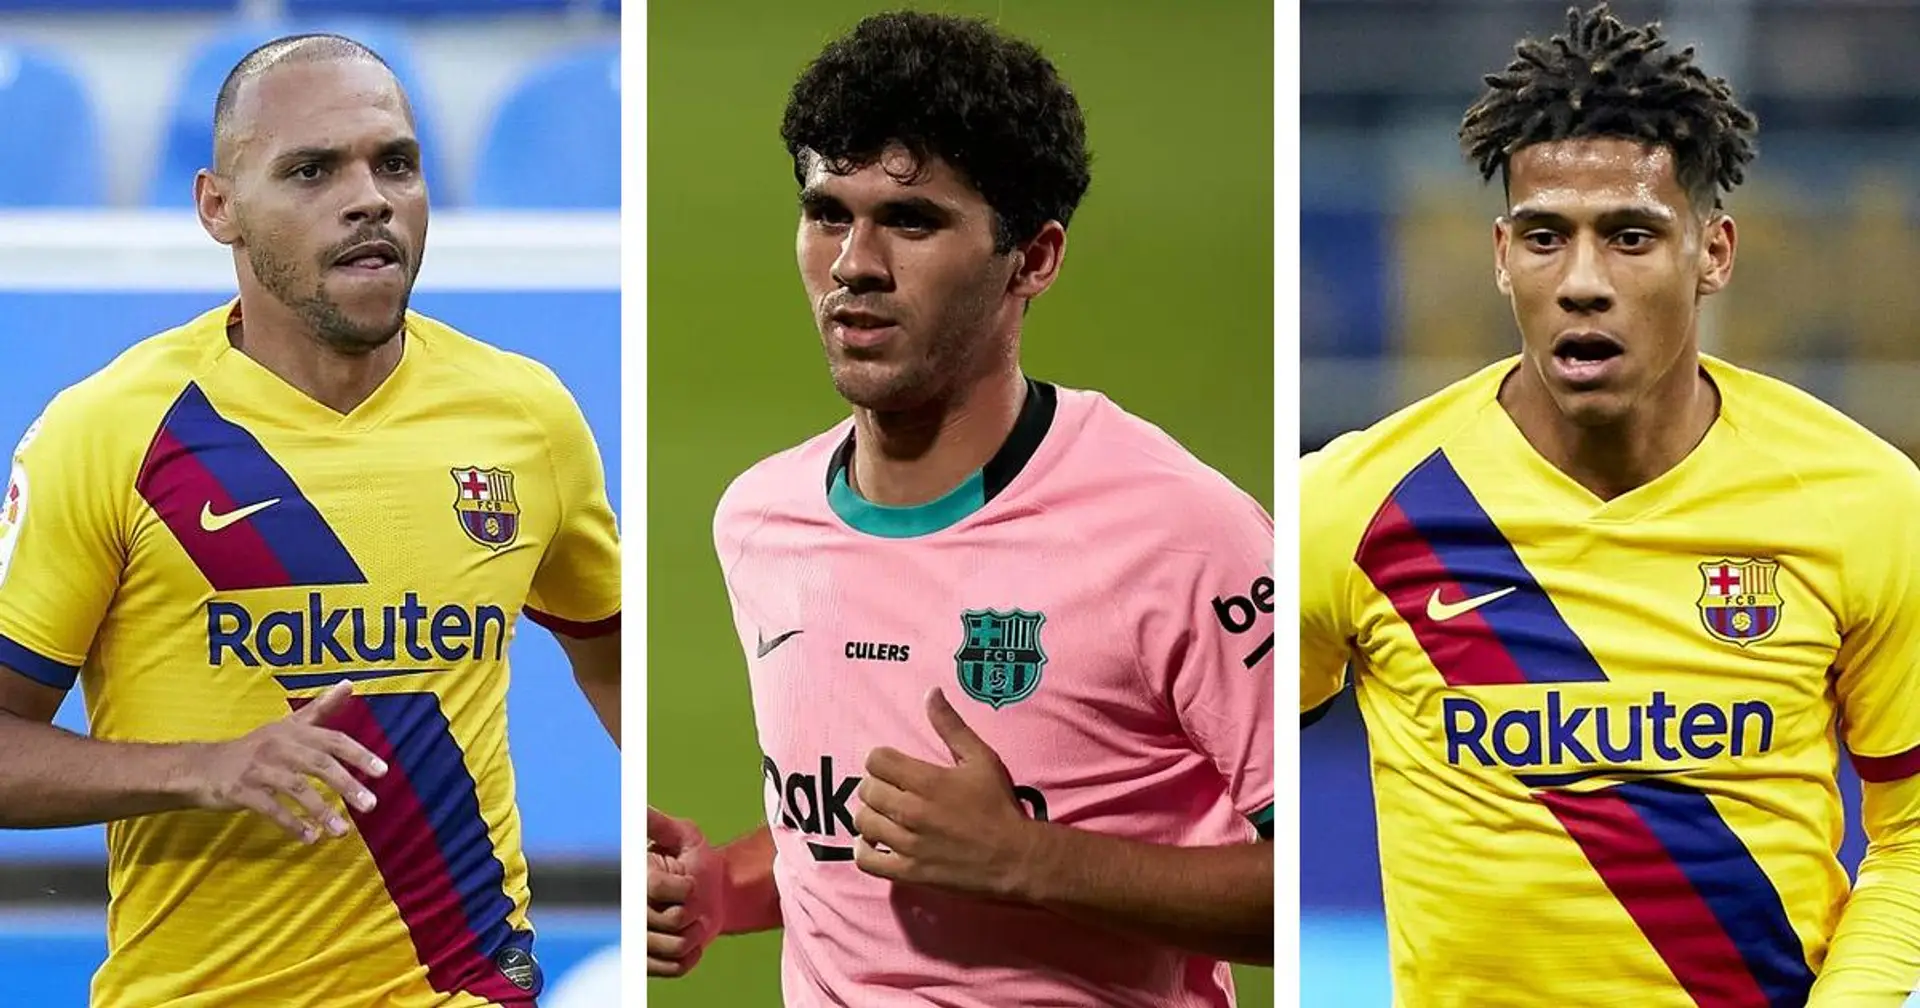 Le Barça veut 3 départs supplémentaires avant la fermeture de la période de transfert, 5 noms sur la liste (fiabilité: 4 étoiles)